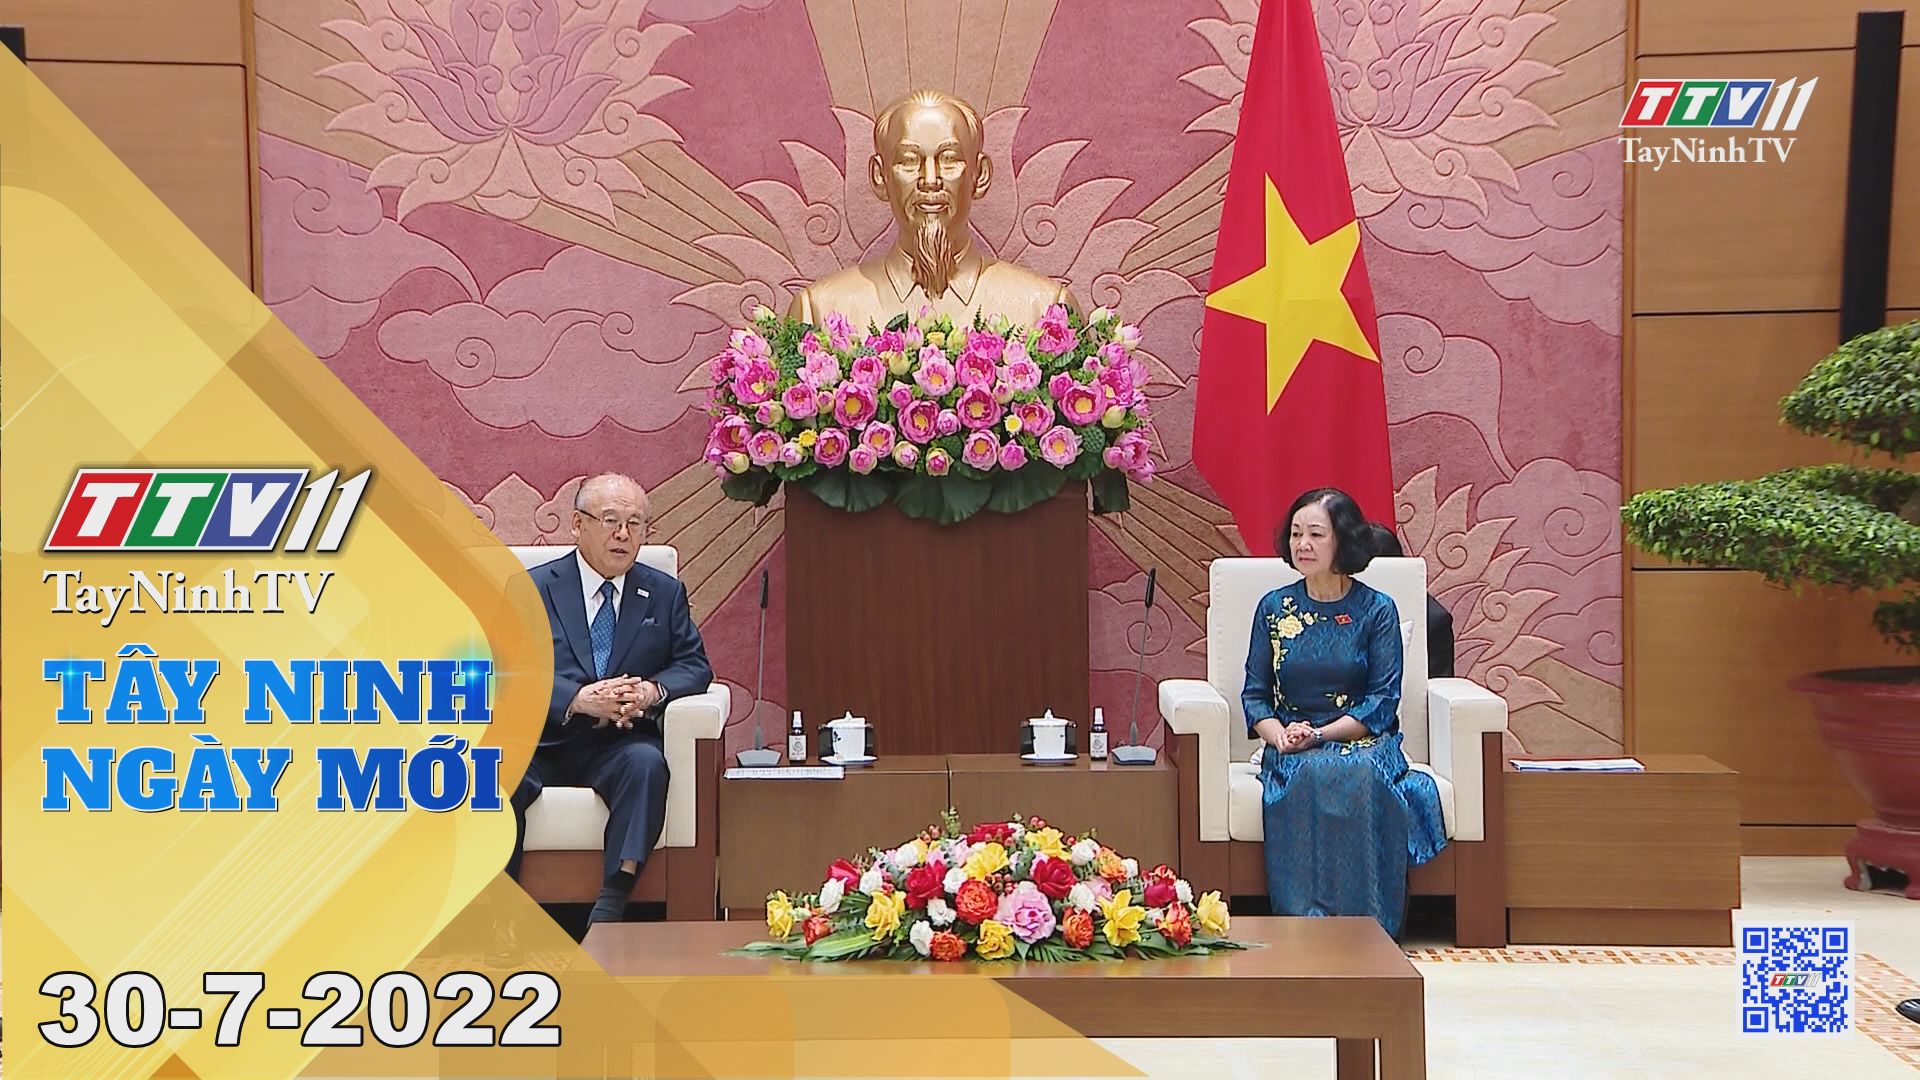 Tây Ninh ngày mới 30-7-2022 | Tin tức hôm nay | TayNinhTV